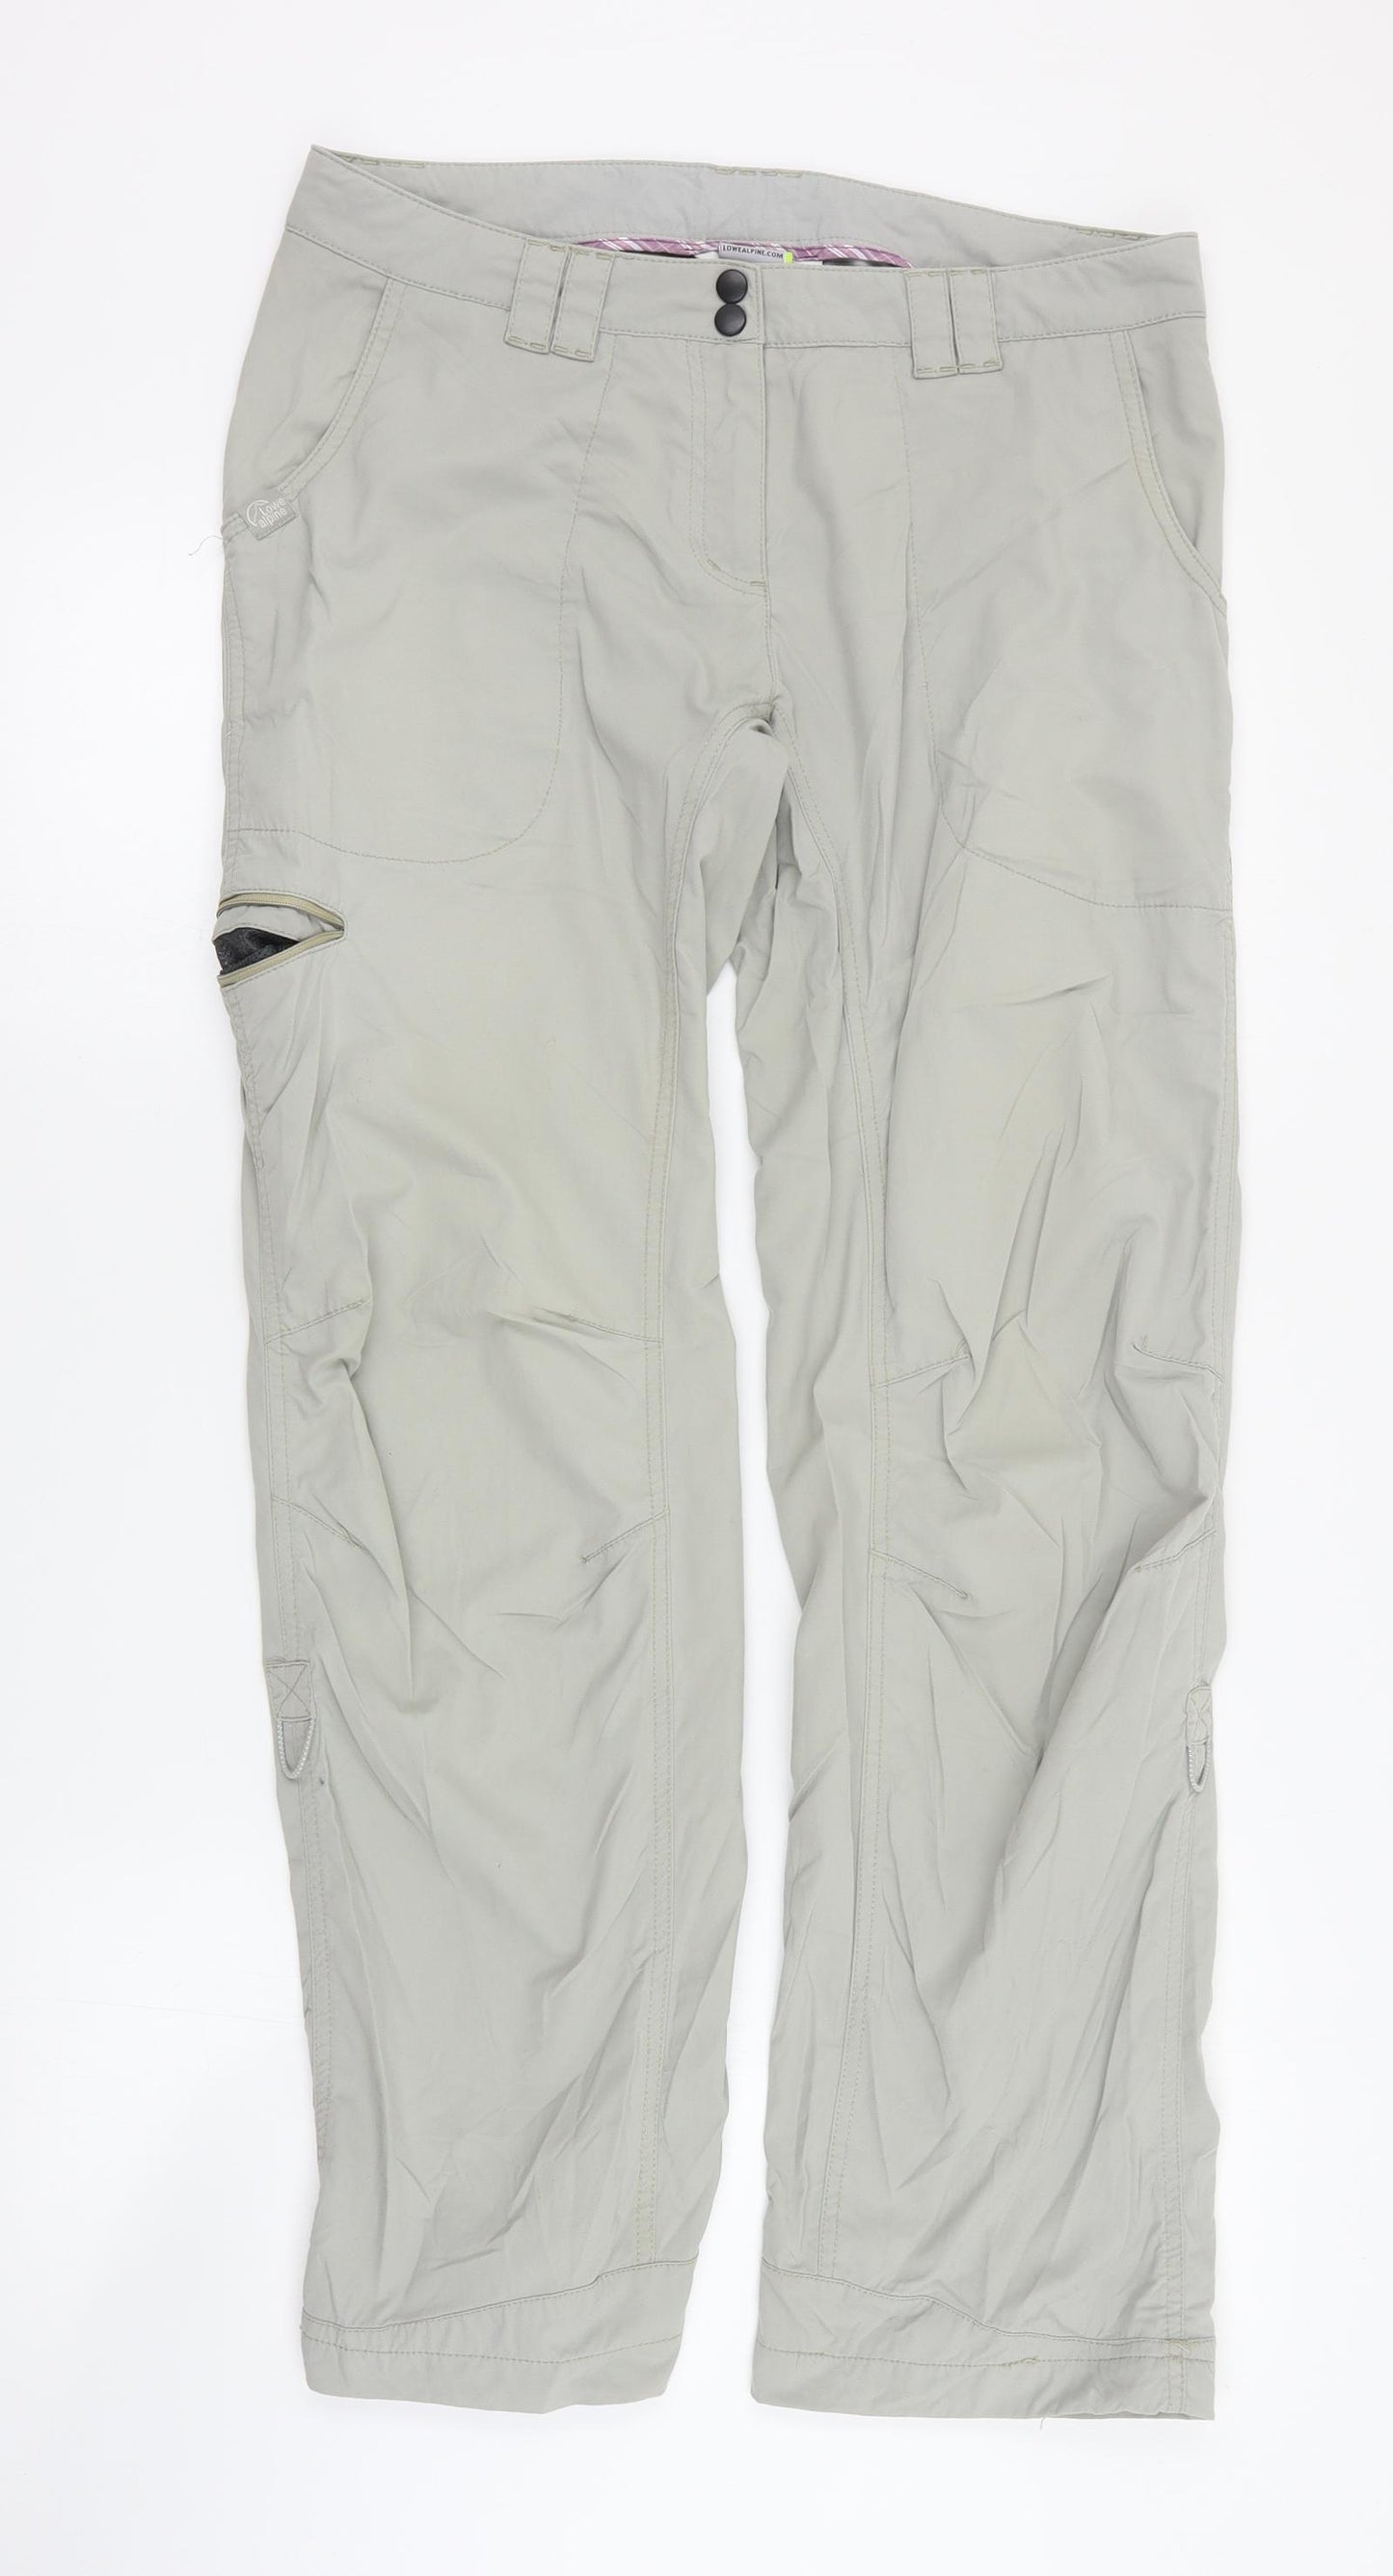 Lowe Alpine Womens Beige  Nylon Trousers  Size 10 L30 in Regular Zip